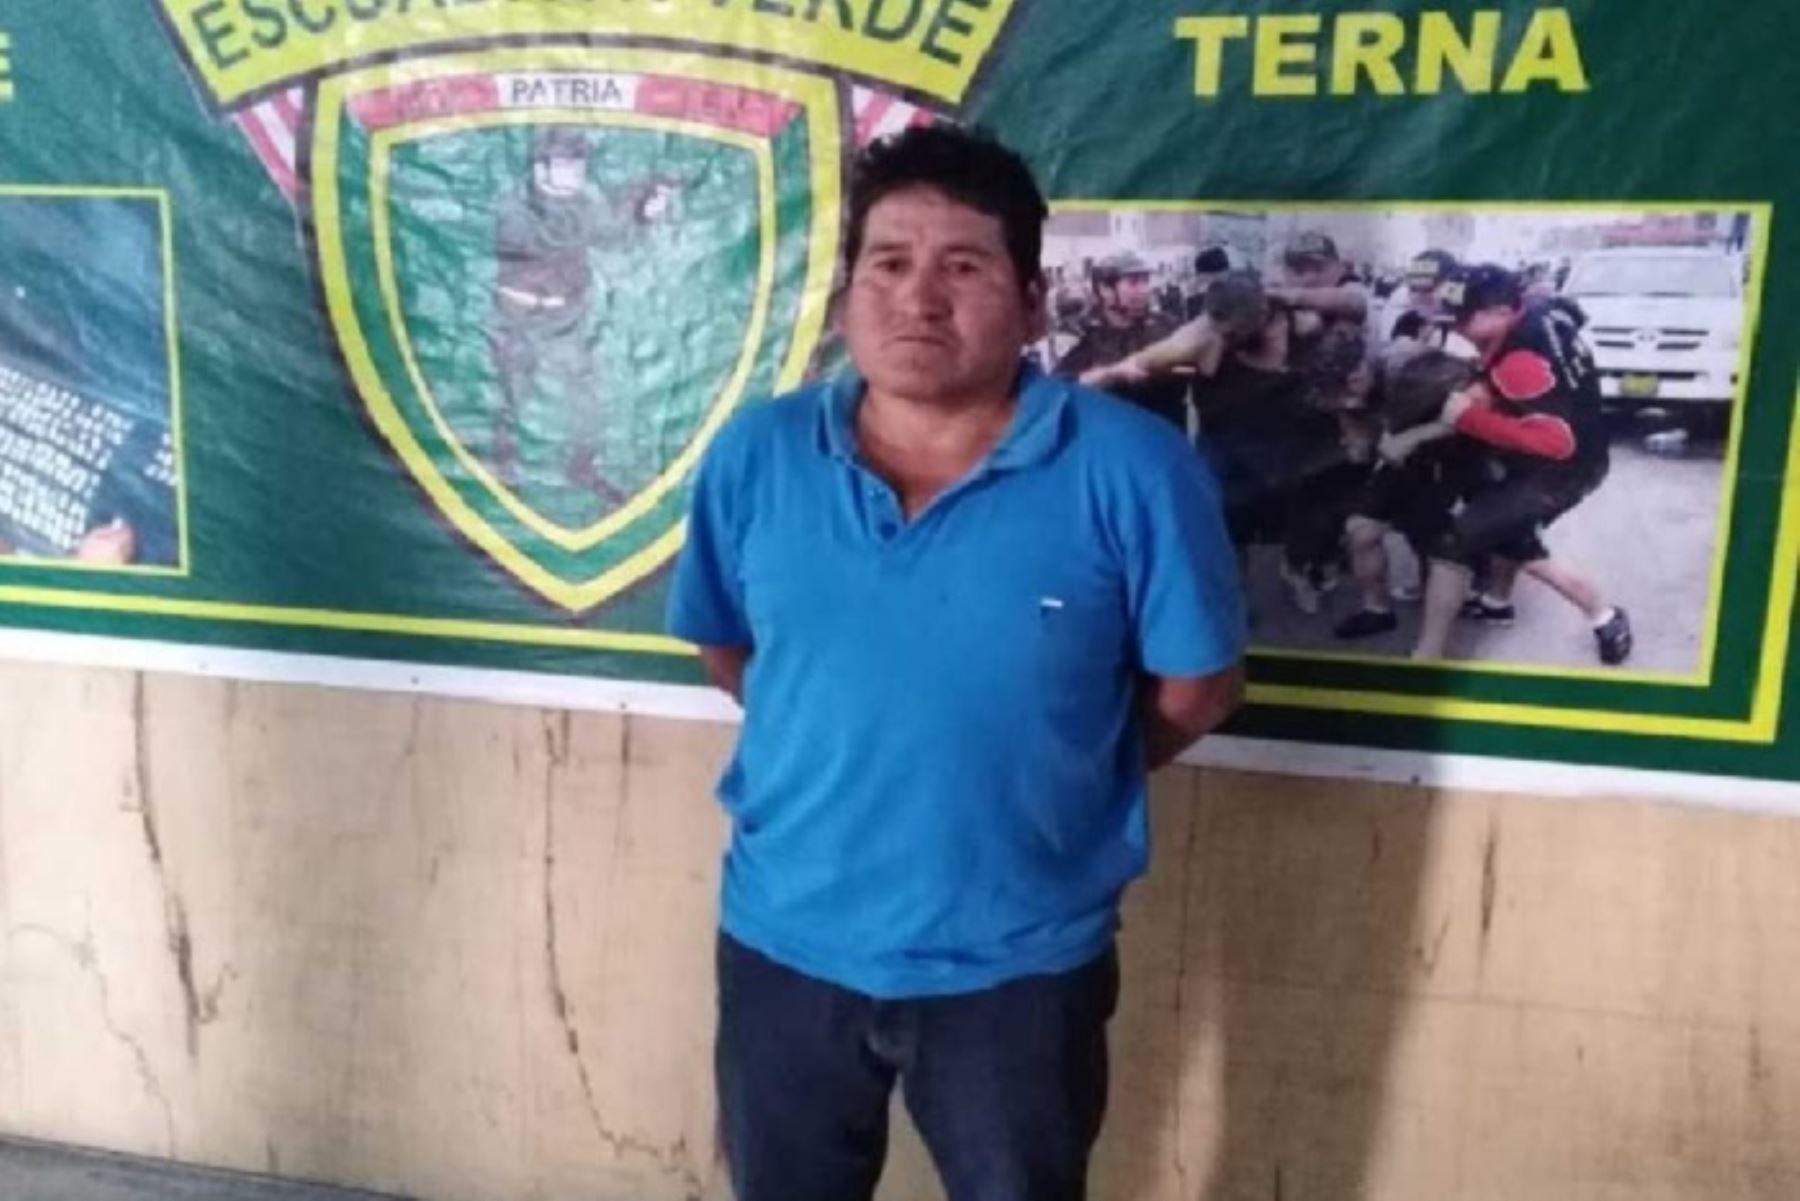 Chimbote: Policía captura a “camarada Carlos”, requisitoriado por terrorismo